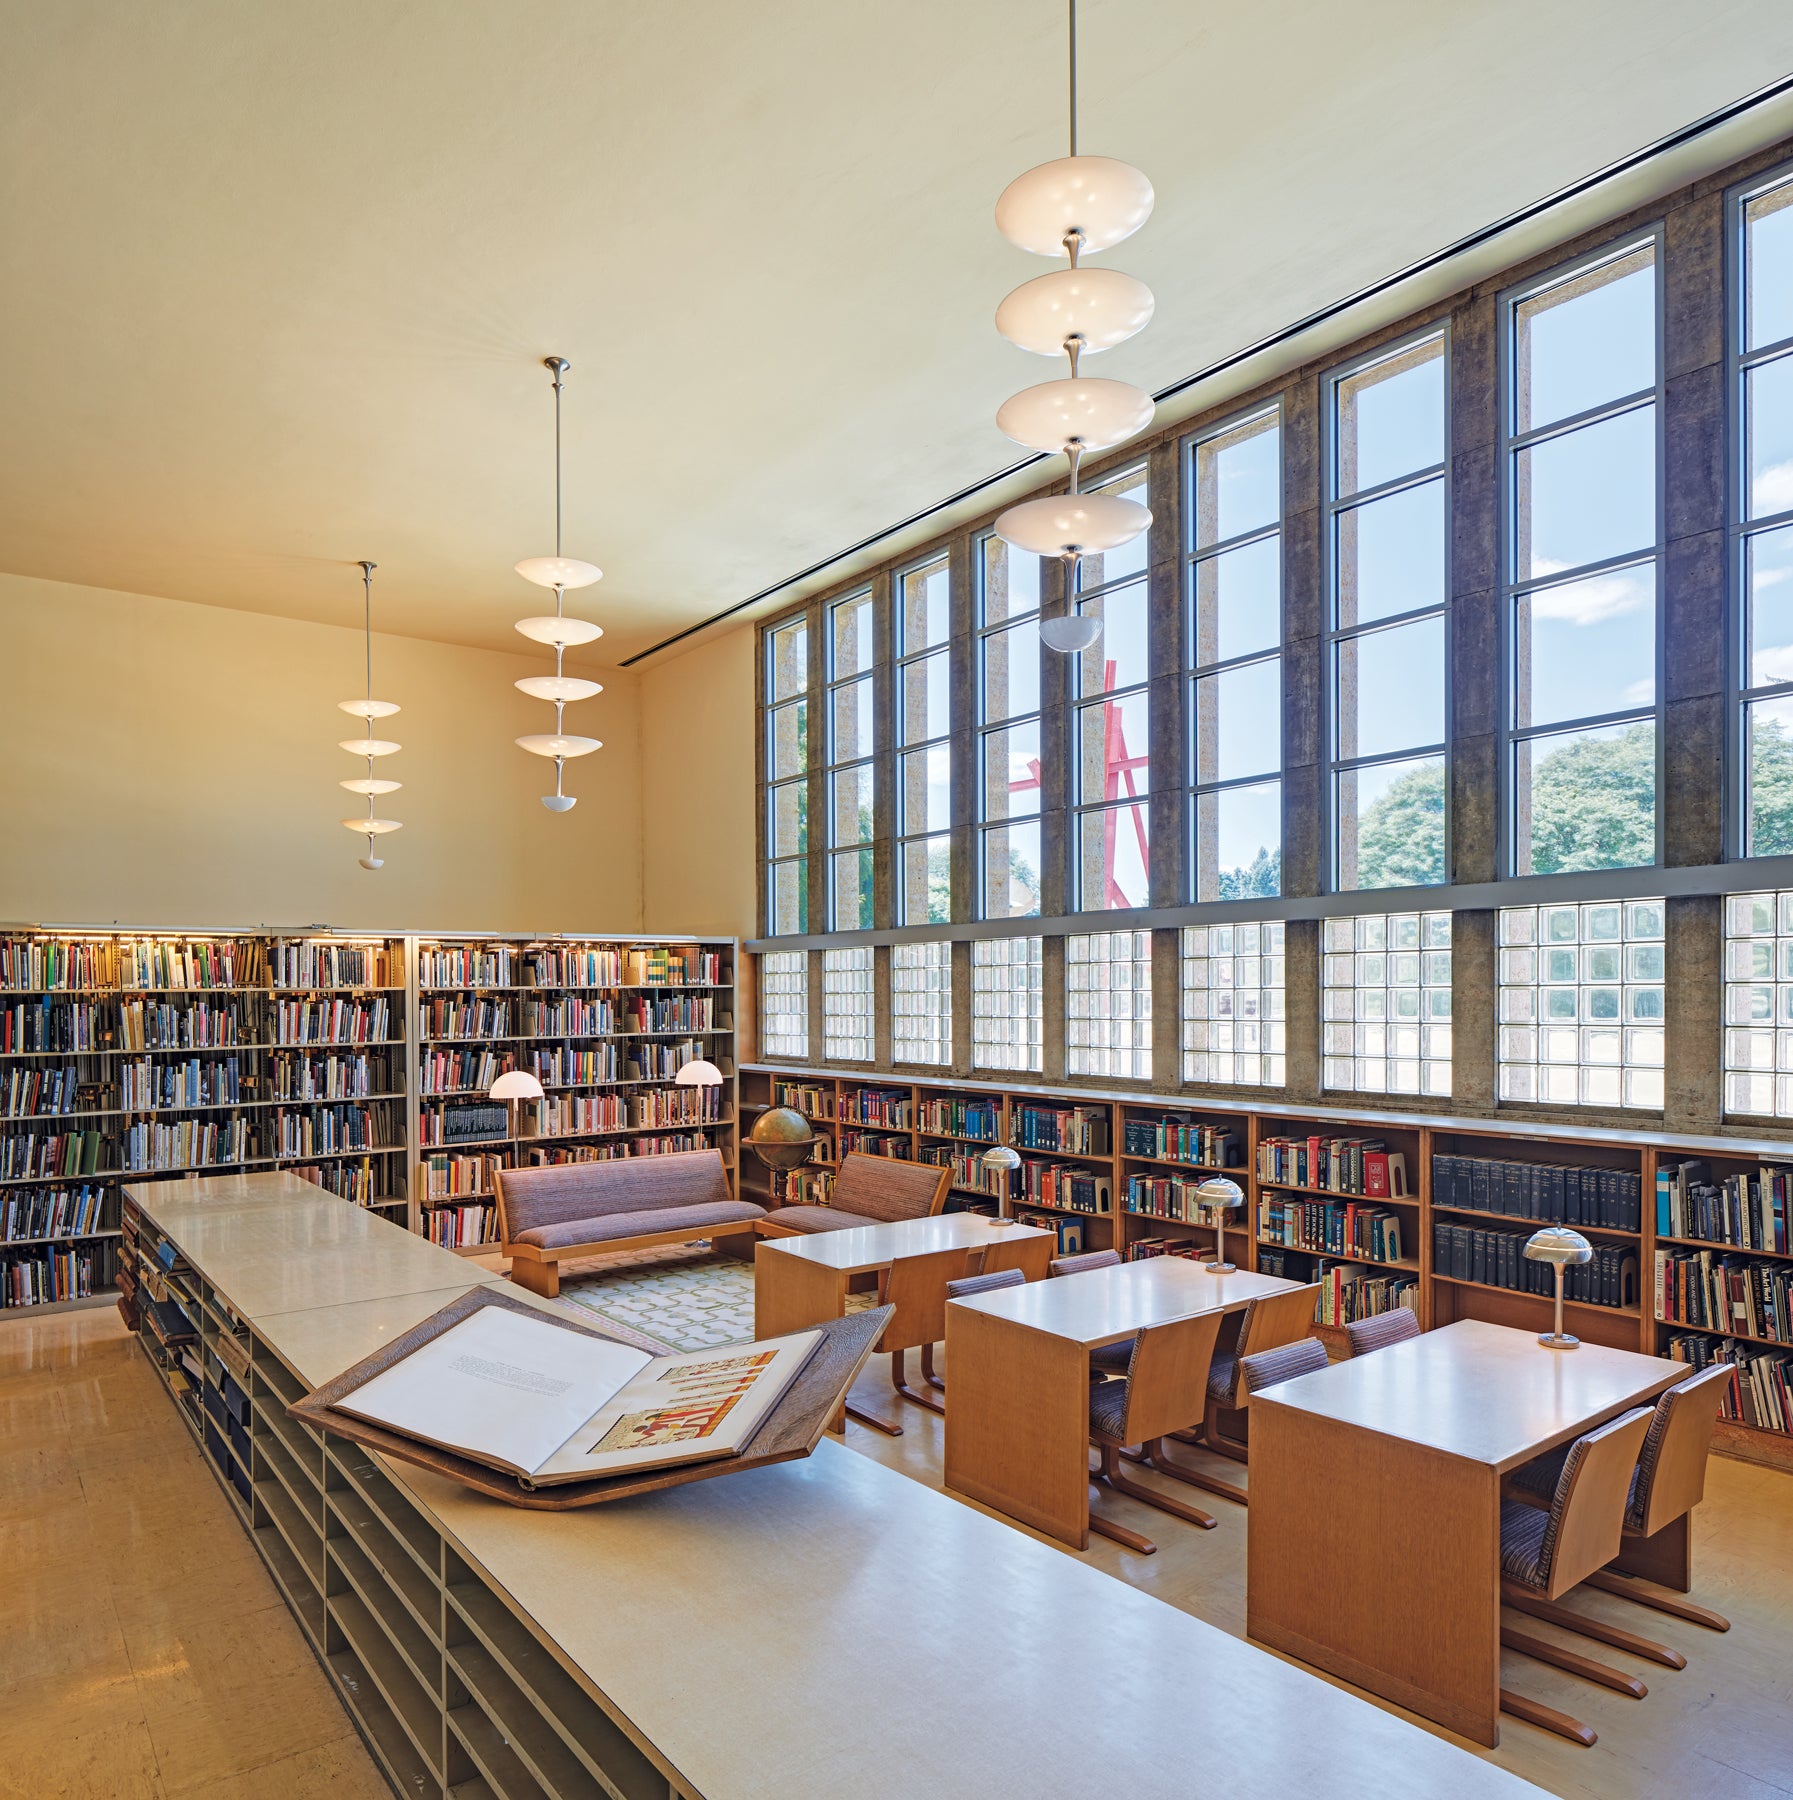 Intérieur de la bibliothèque de la Cranbrook Academy of Art, avec luminaires à plusieurs niveaux et étagères de livres.